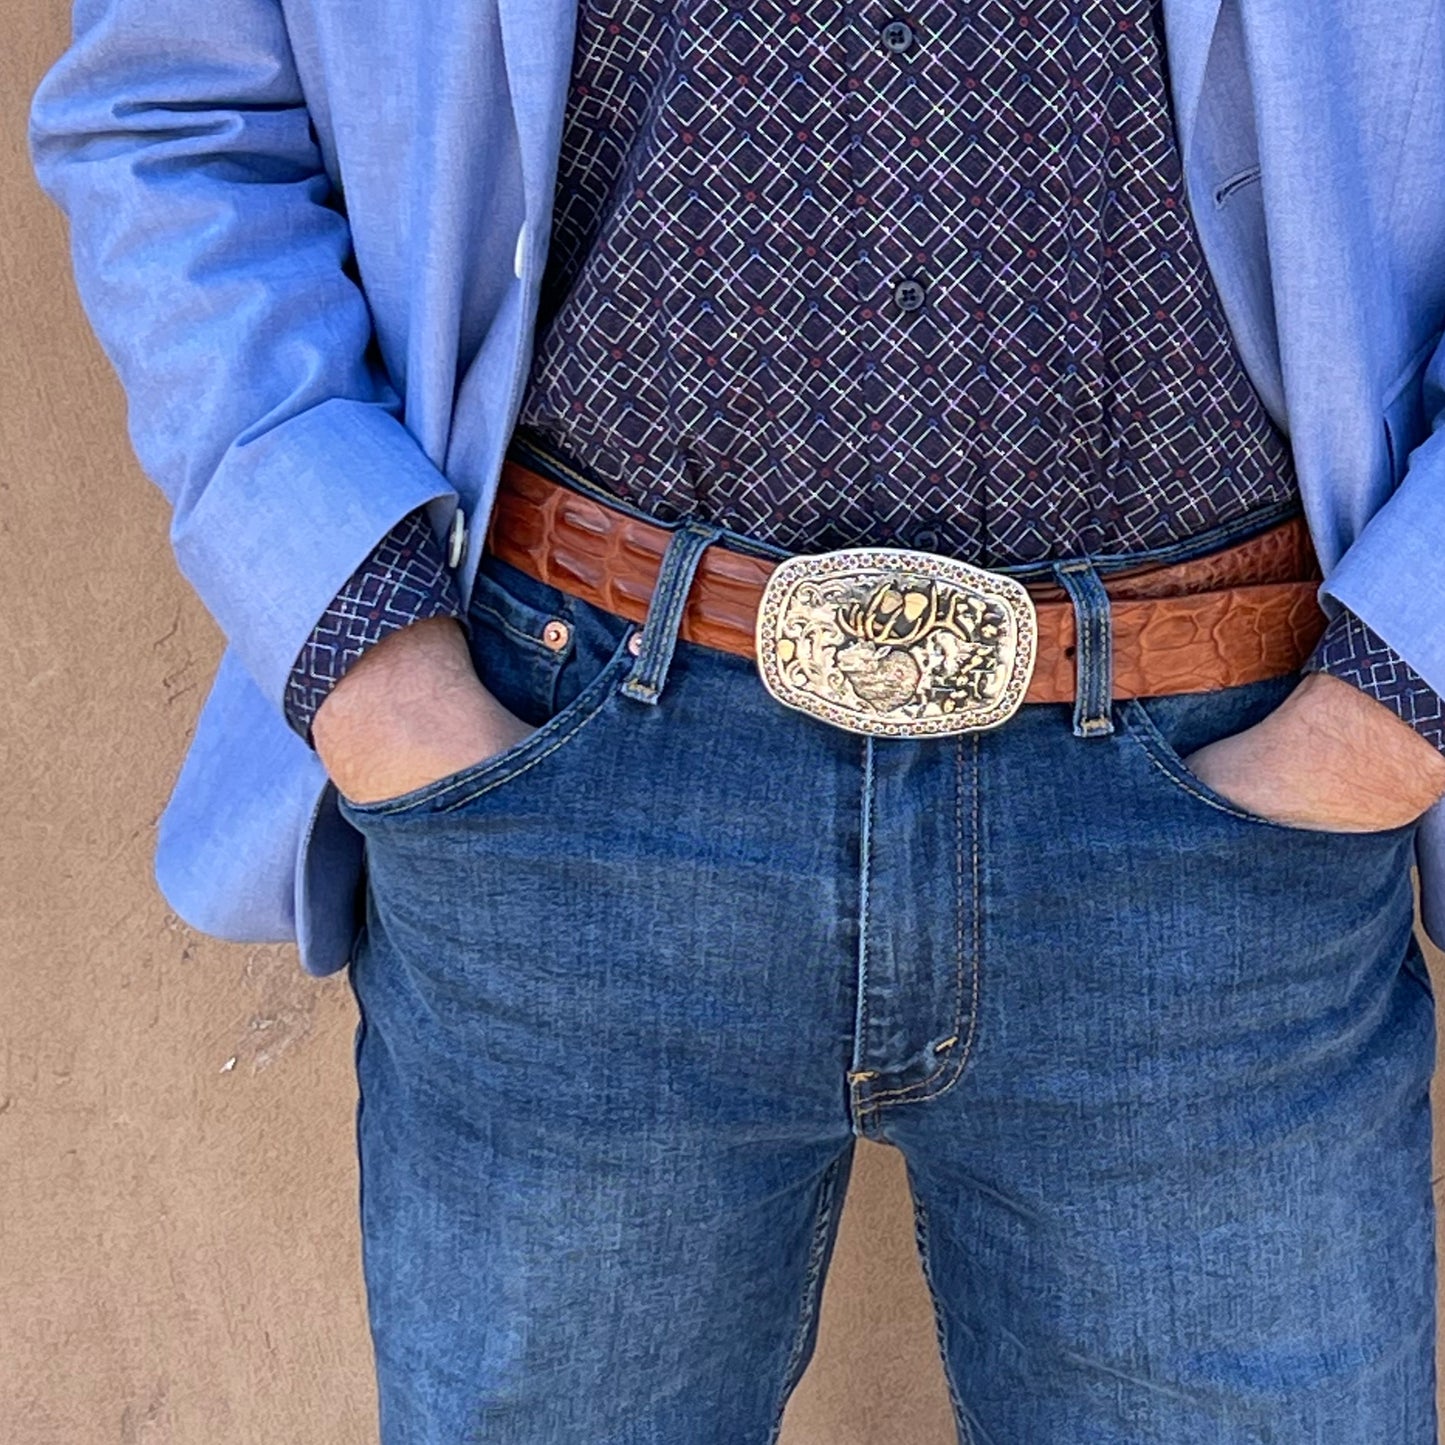 Waist view of man wearing Elk Trophy belt buckle.